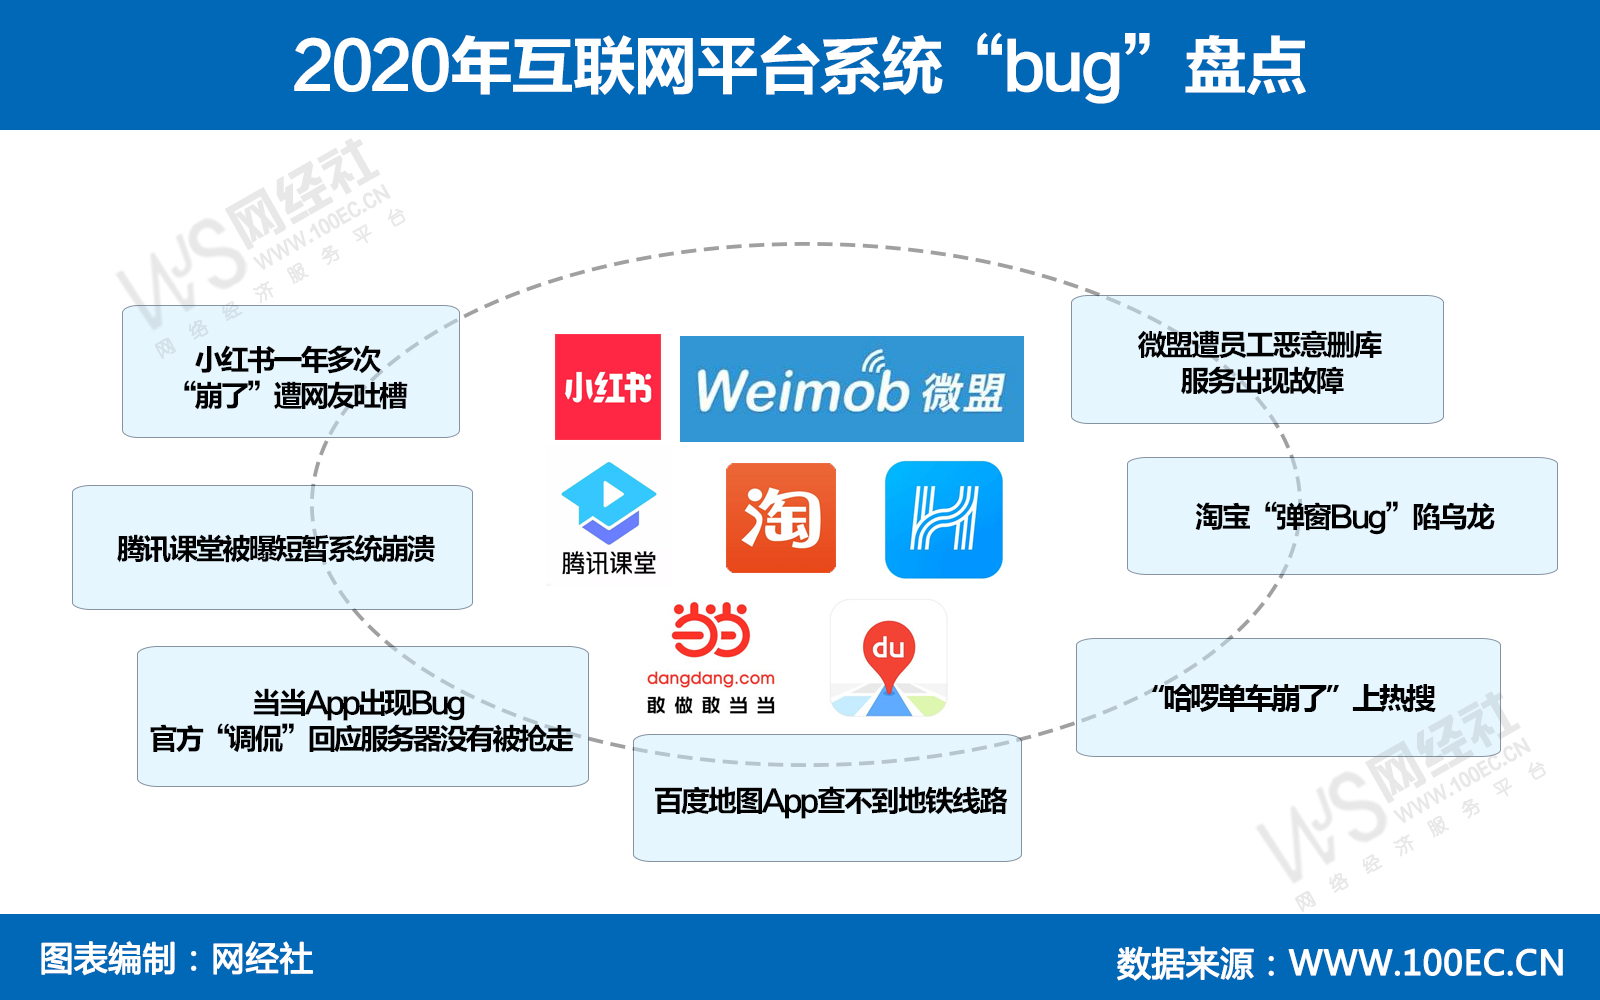 2020年互联网平台系统出现“bug”情况盘点.jpg